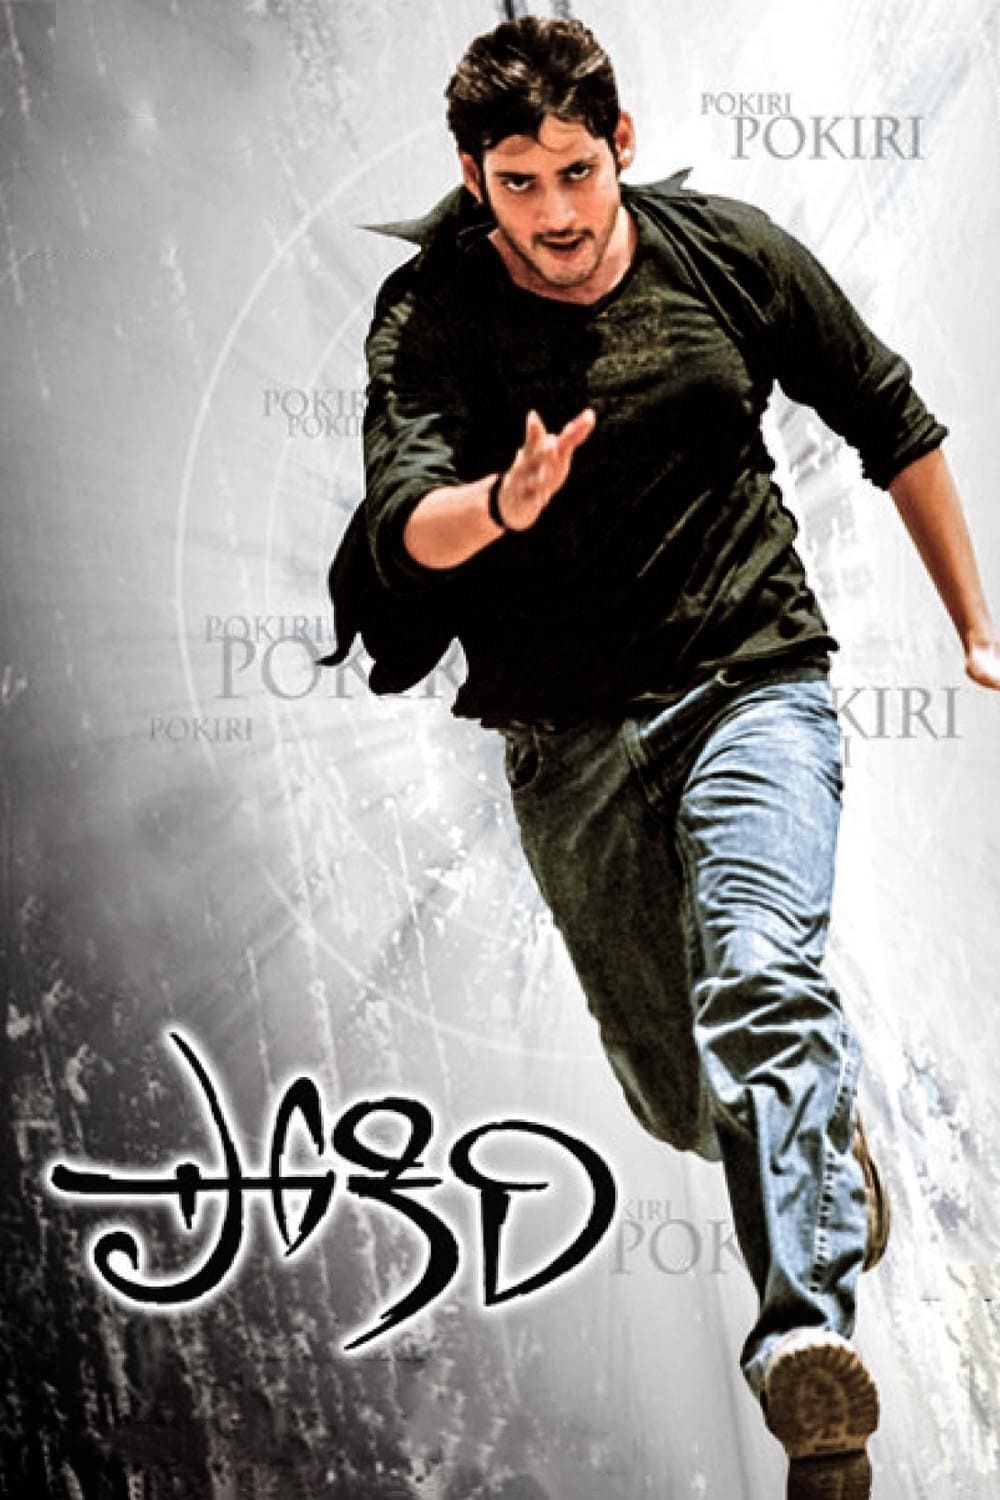 Pokiri (2006): Released in 2006, Pokiri left an indelible mark on the Telugu film industry. 